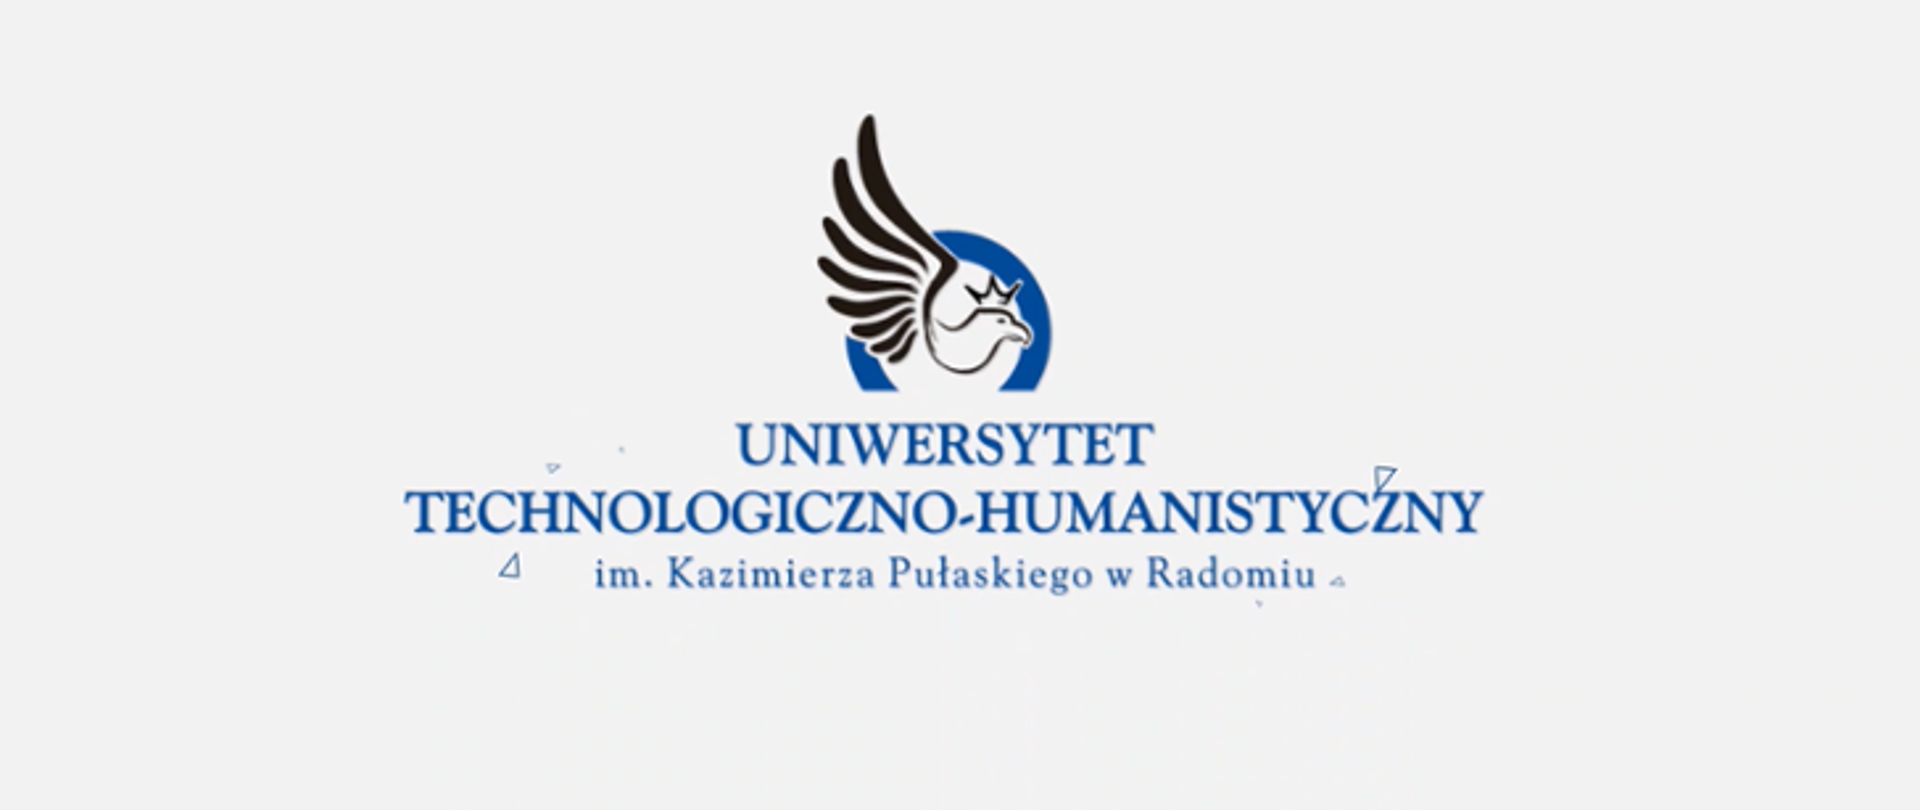 Uniwersytet - logo